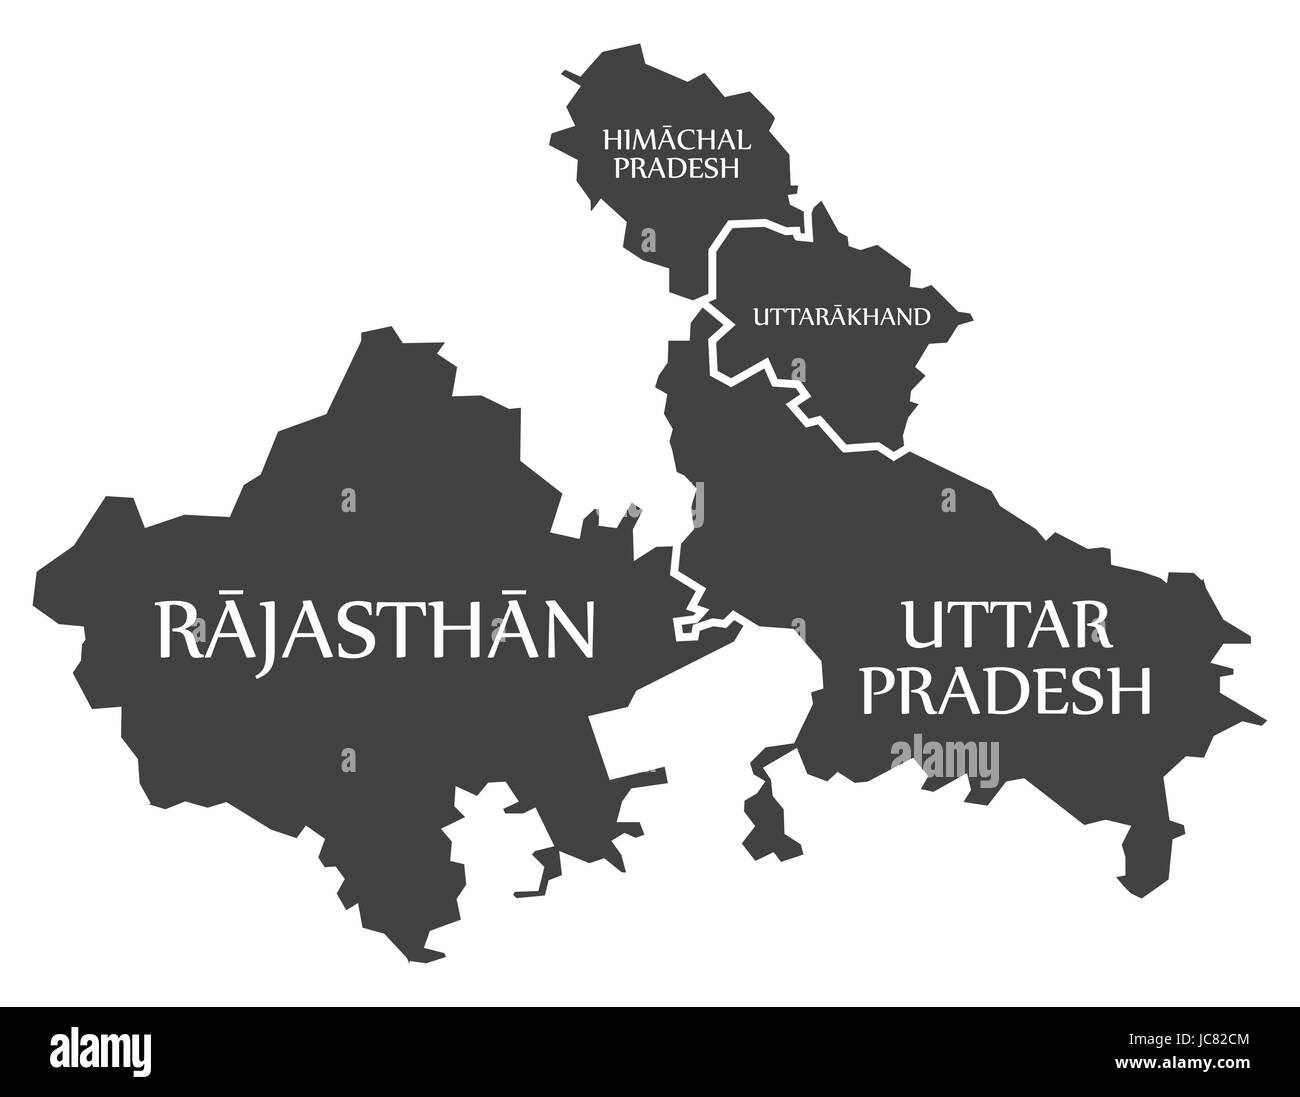 Rajasthan - Himachal Pradesh - Uttarakhand - Uttar Pradesh Map Illustration d'états indiens Illustration de Vecteur